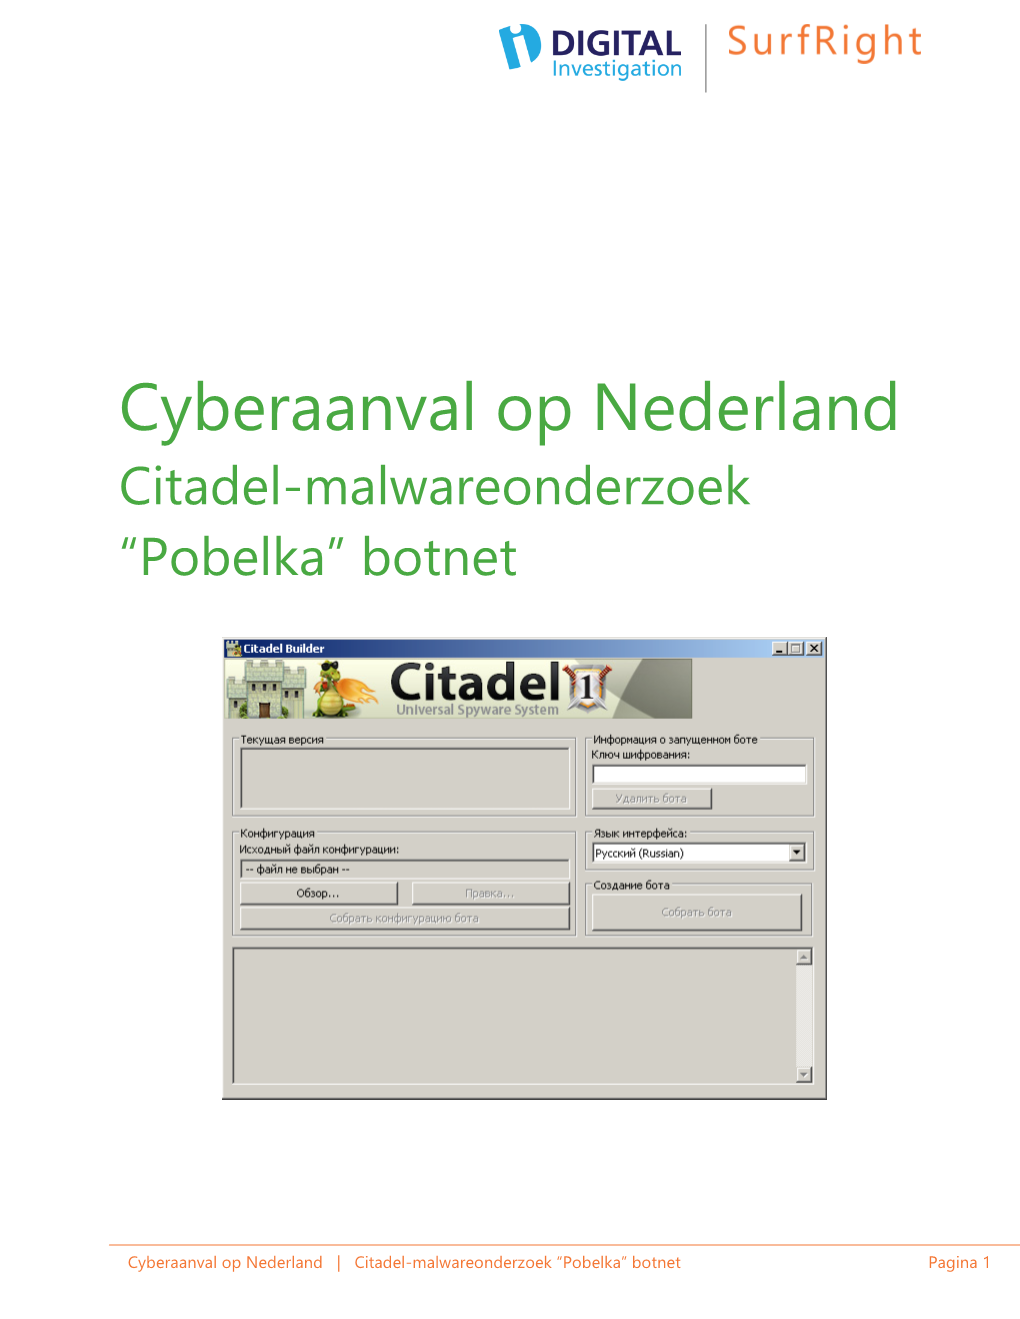 Cyberaanval Op Nederland Citadel-Malwareonderzoek “Pobelka” Botnet